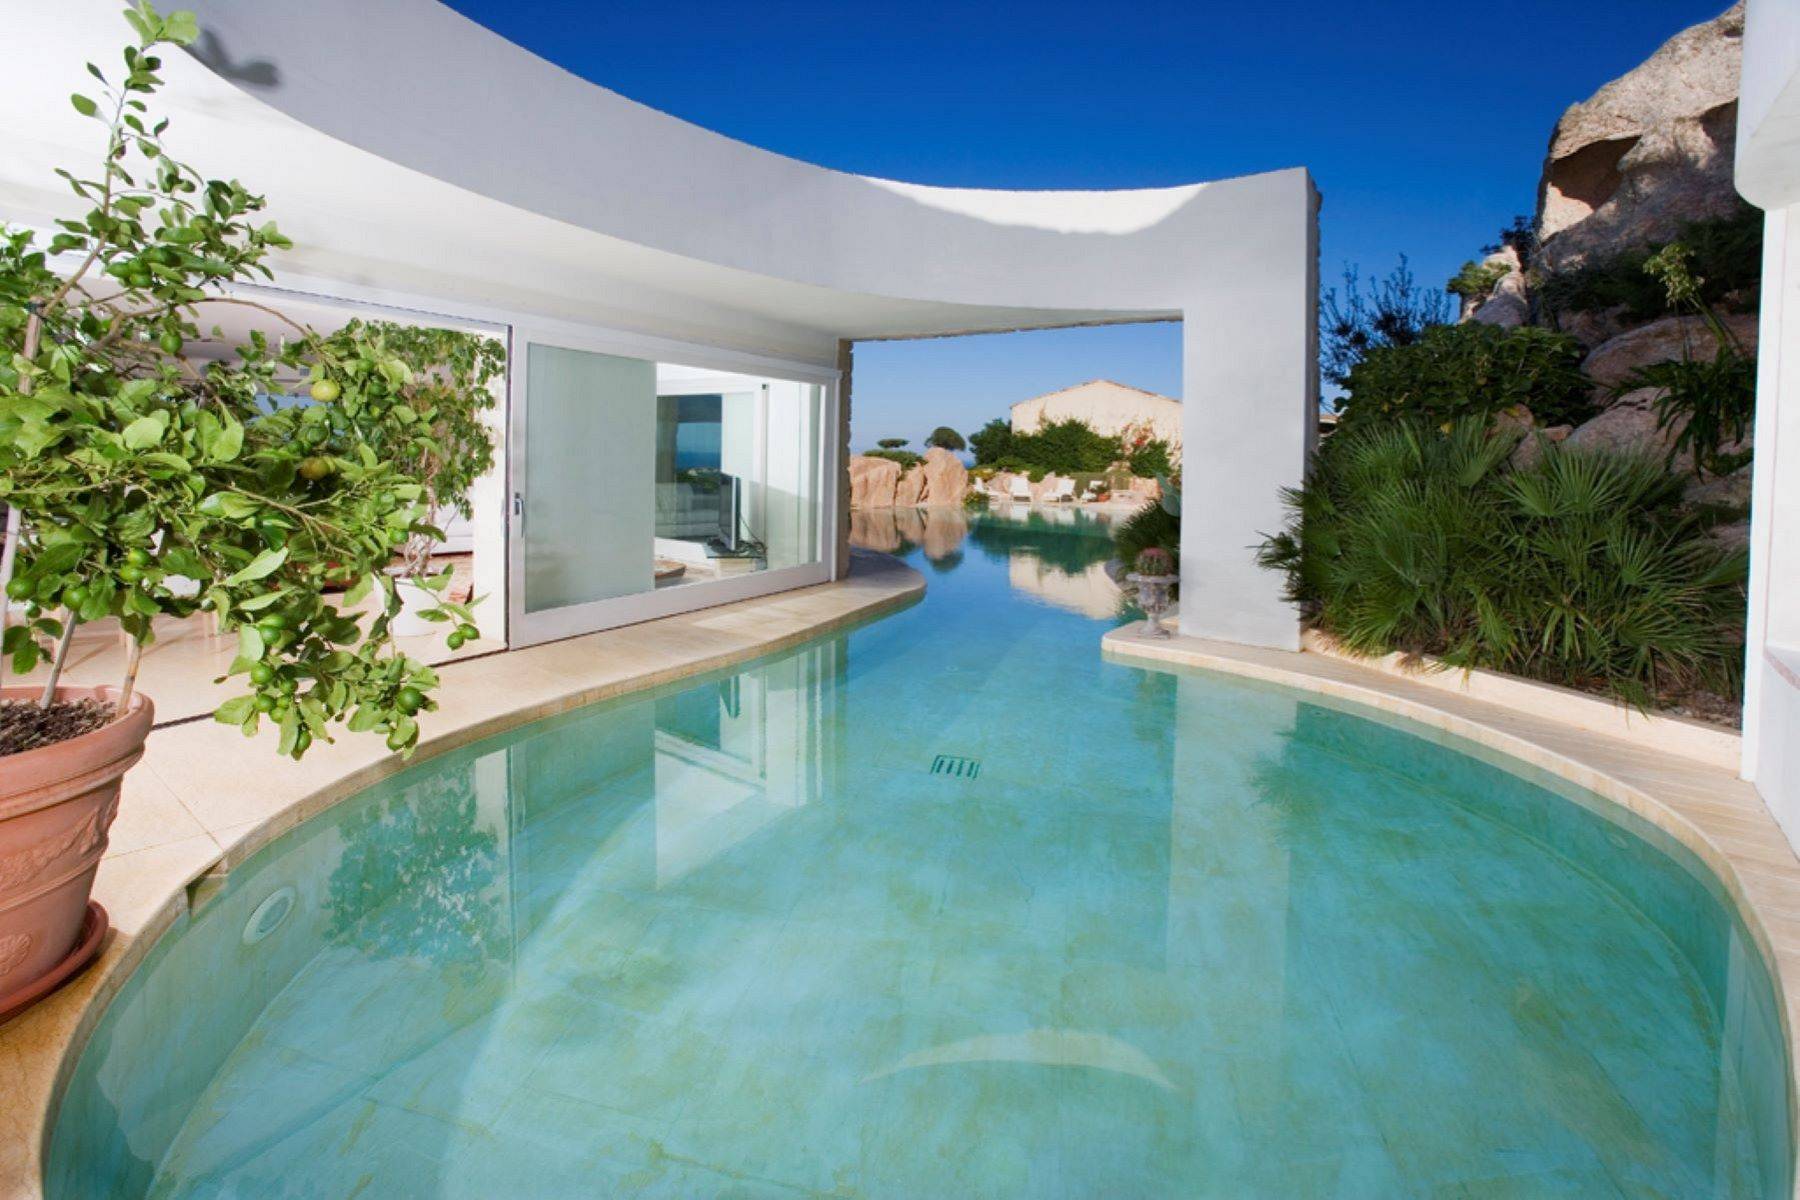 Exclusive property overlooking the Costa Smeralda